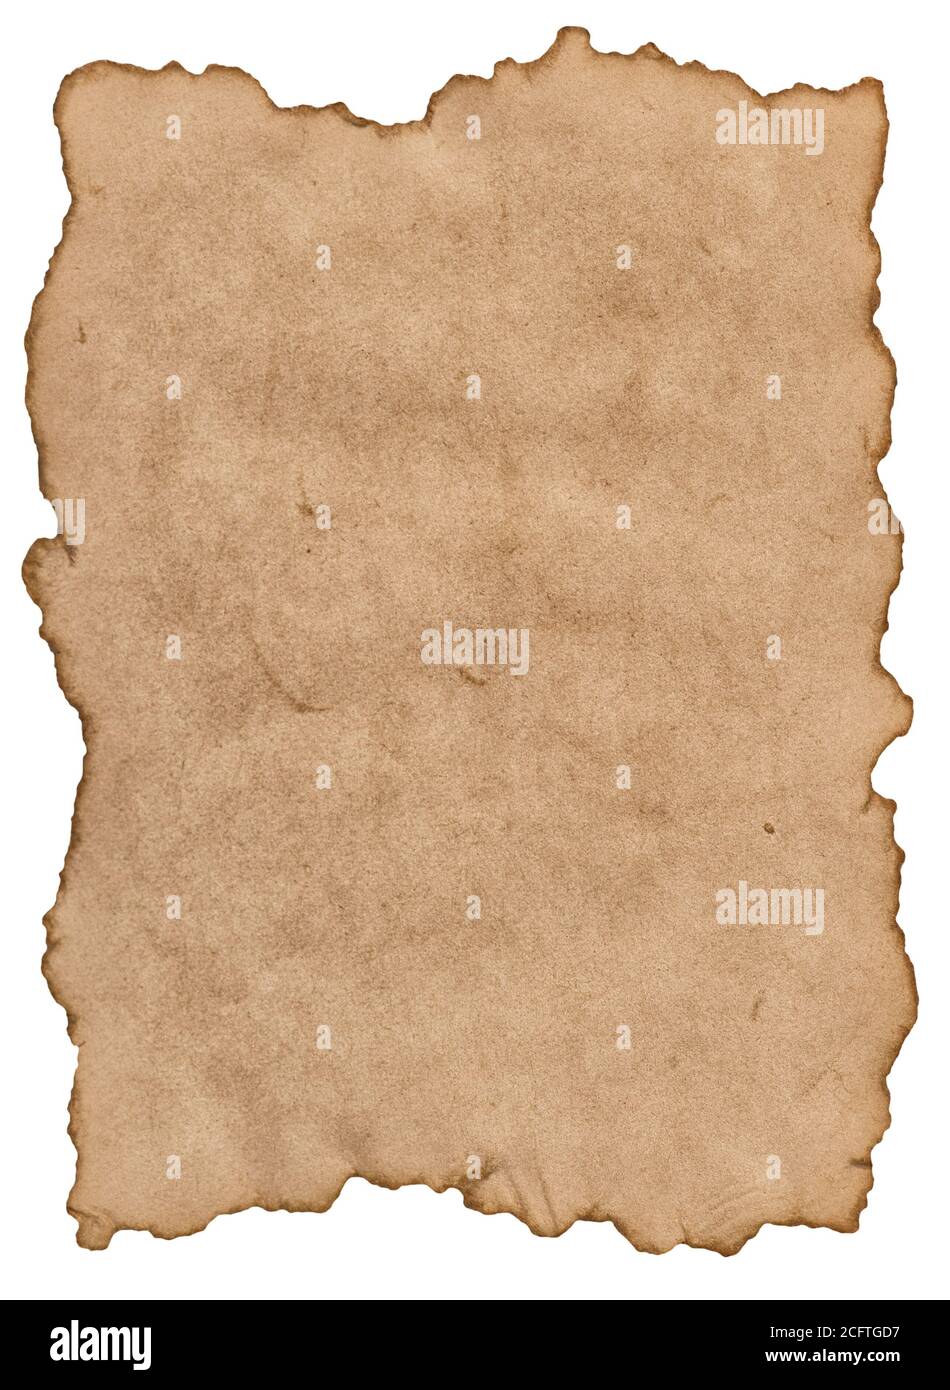 Feuille de papier parchemin avec bords déchirés isolée sur fond blanc Banque D'Images